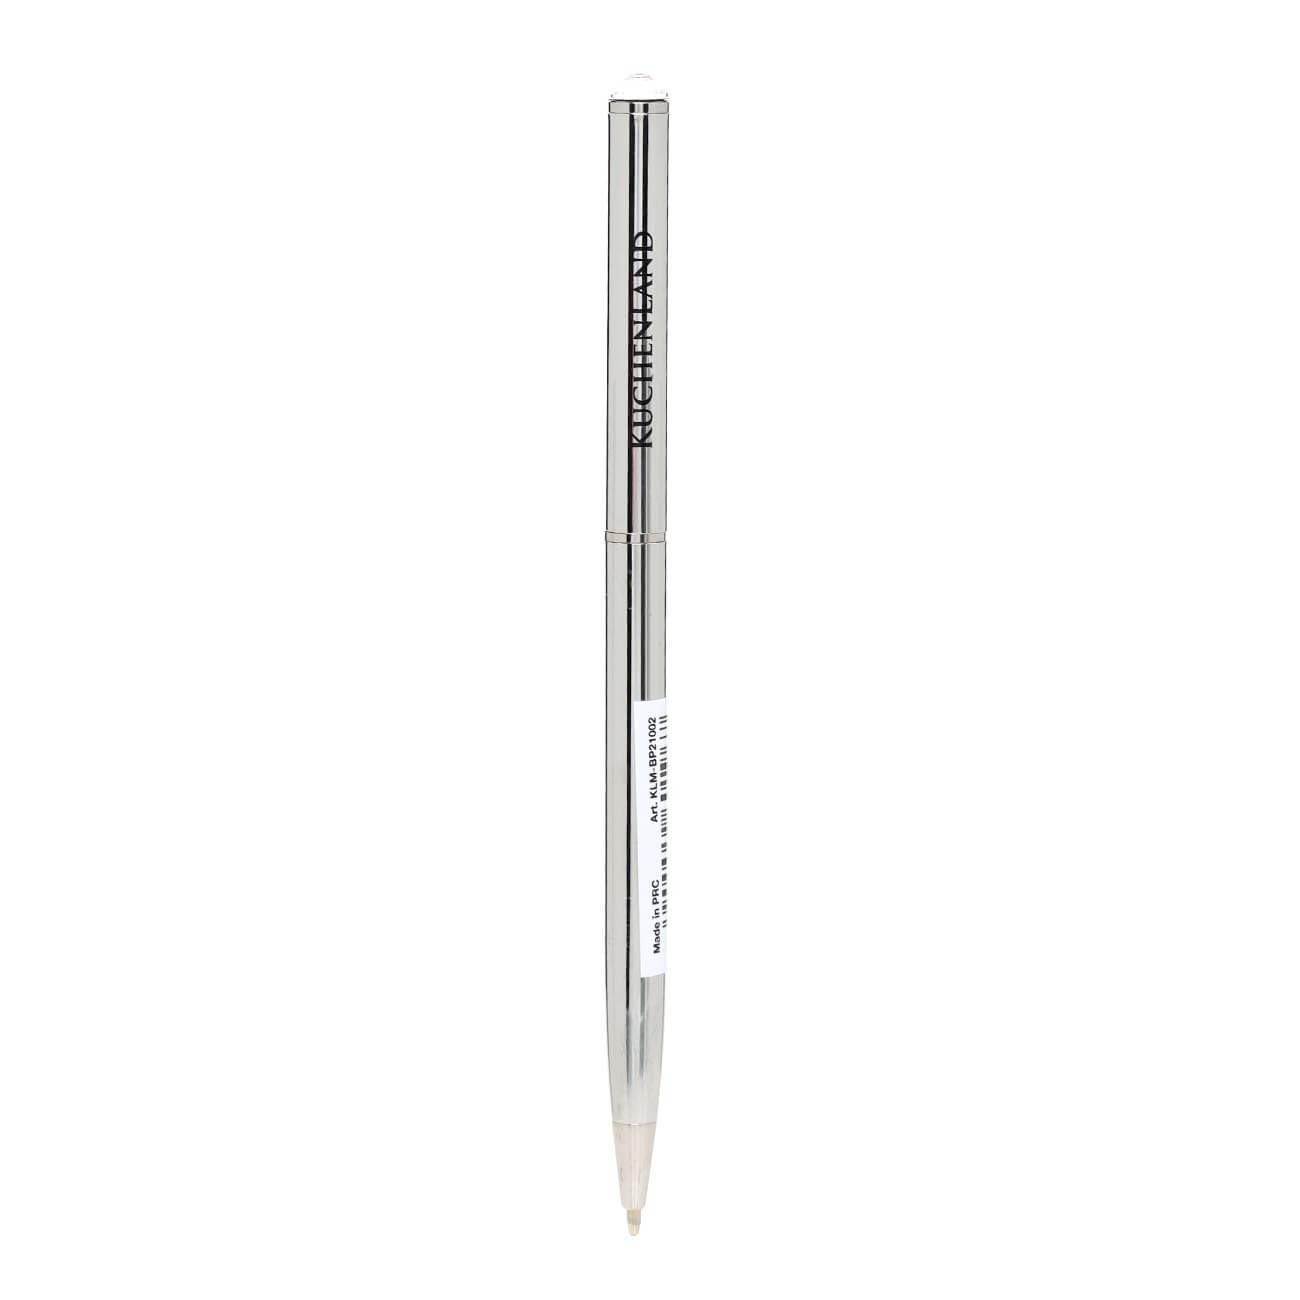 Ручка шариковая, 13 см, с кристаллом, металл, серебристая, Draw ручка металл шариковая